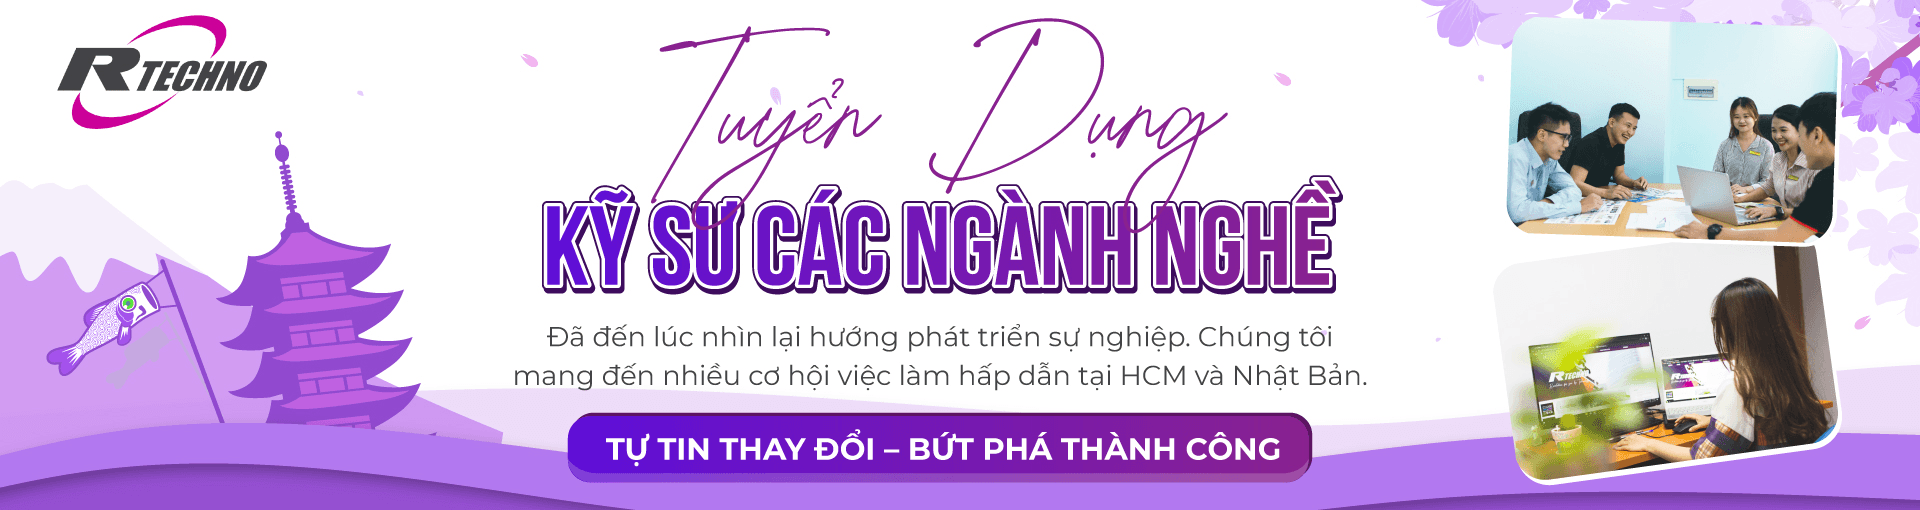 Công Ty TNHH R Techno Việt Nam